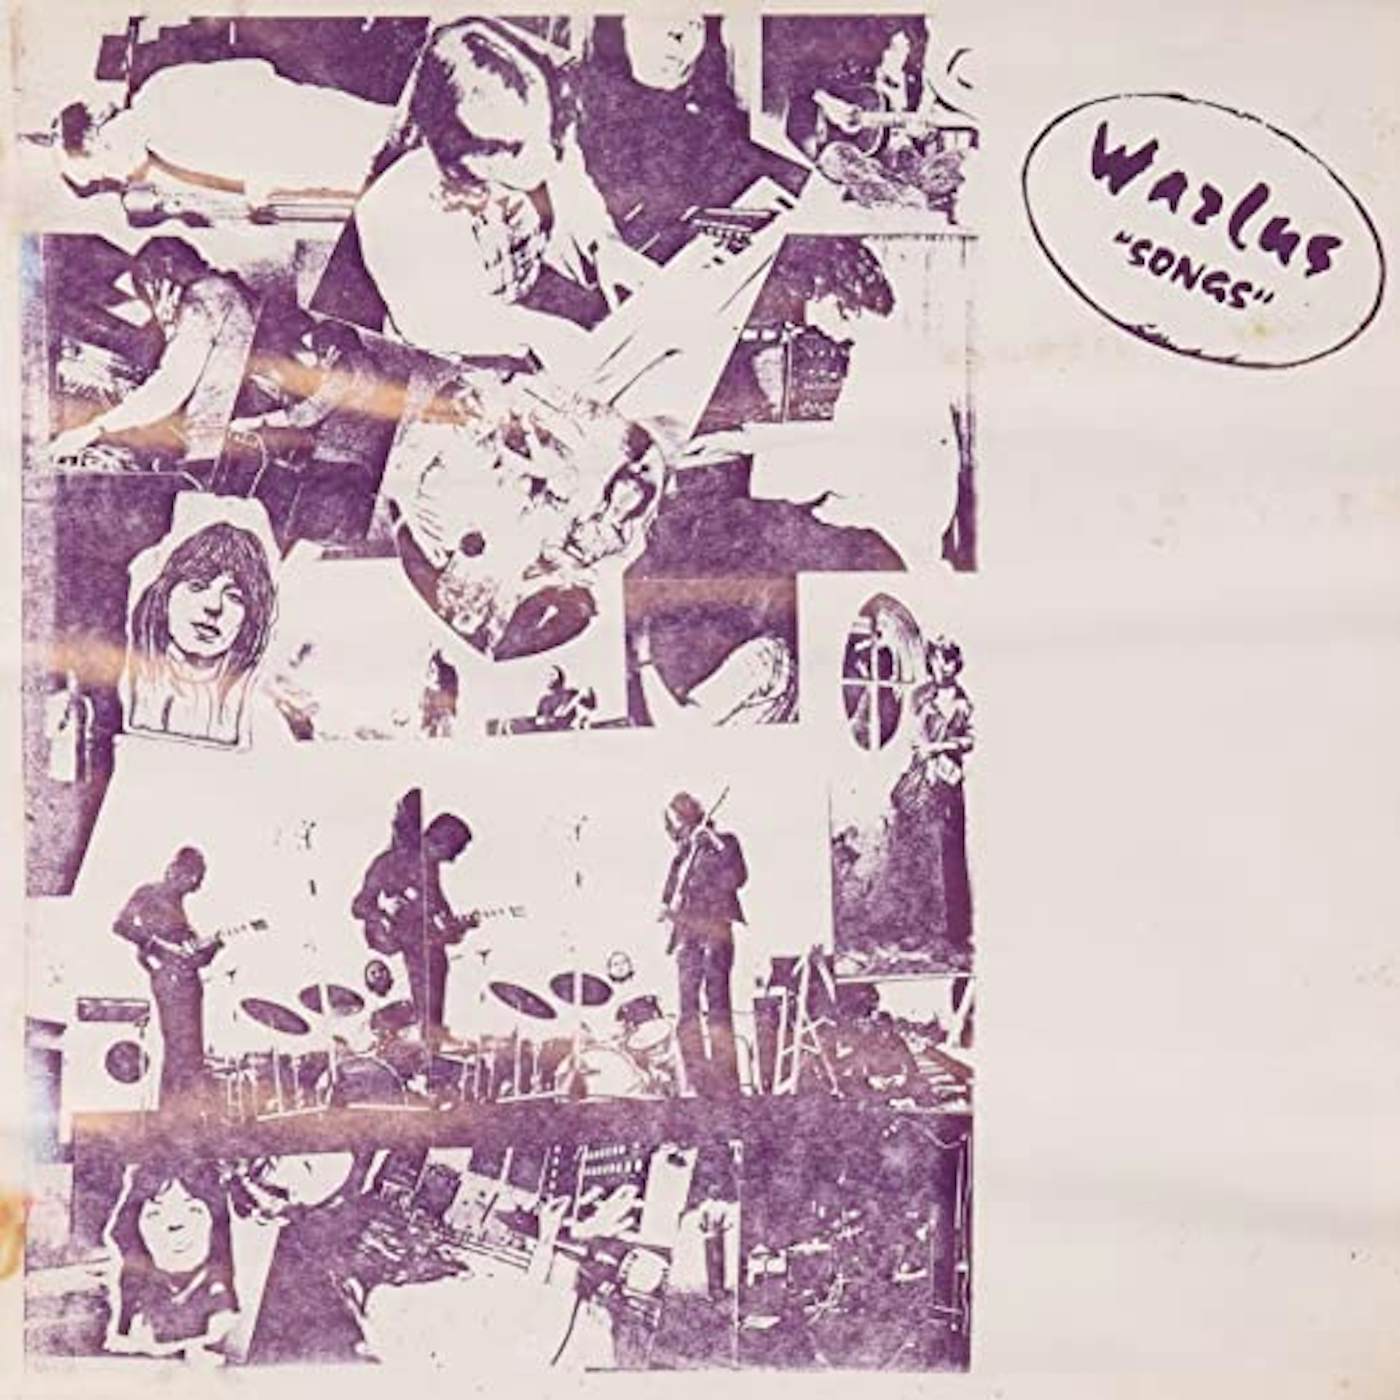 WARLUS SONGS Vinyl Record